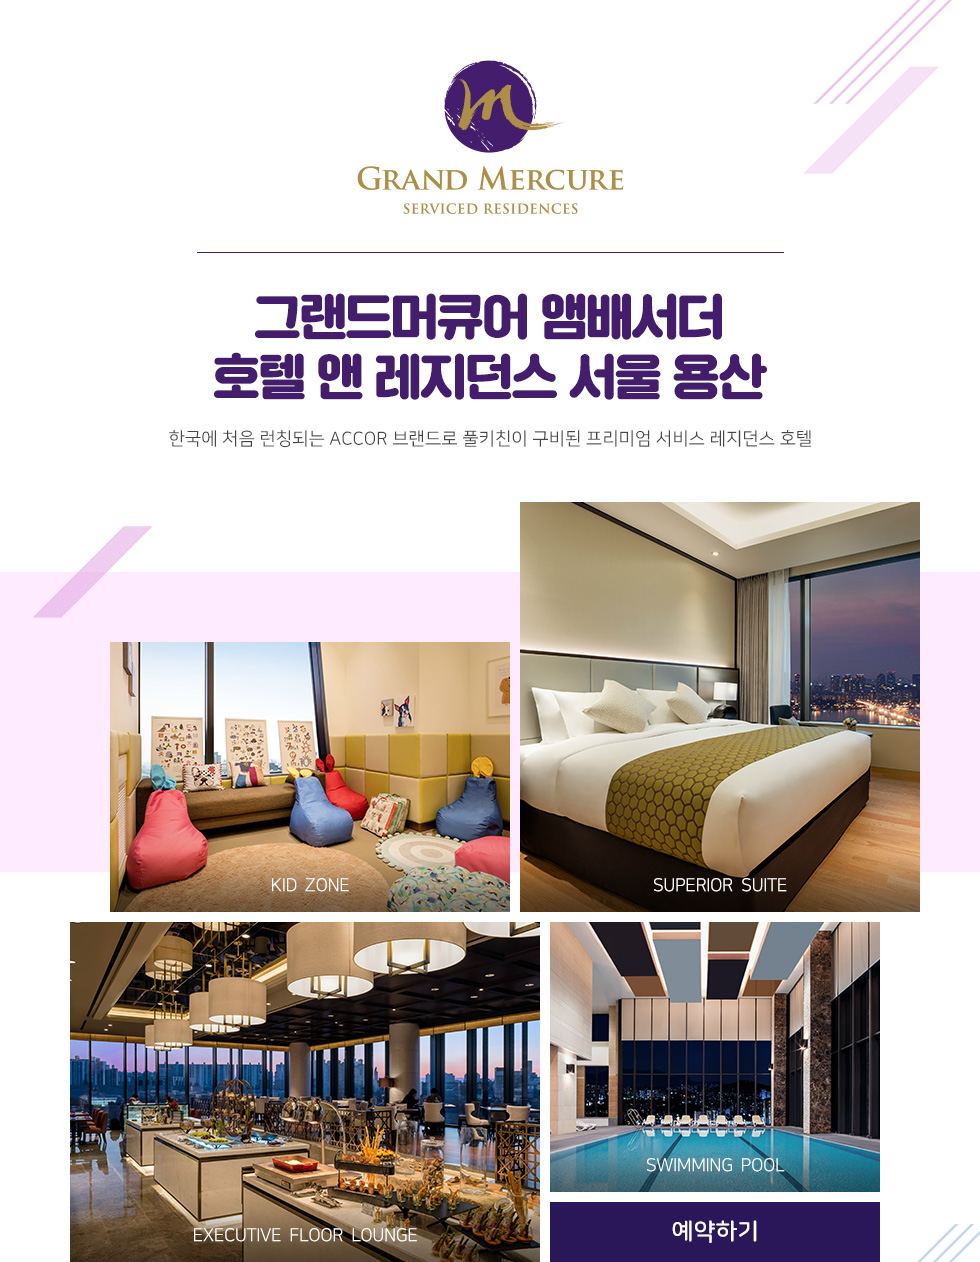 그랜드머큐어 앰배서더 호텔 앤 레지던스 서울 용산 한국에 처음 런칭되는 Accor 브랜드로 풀키친이 구비된 프리미엄 서비스 레지던스 호텔